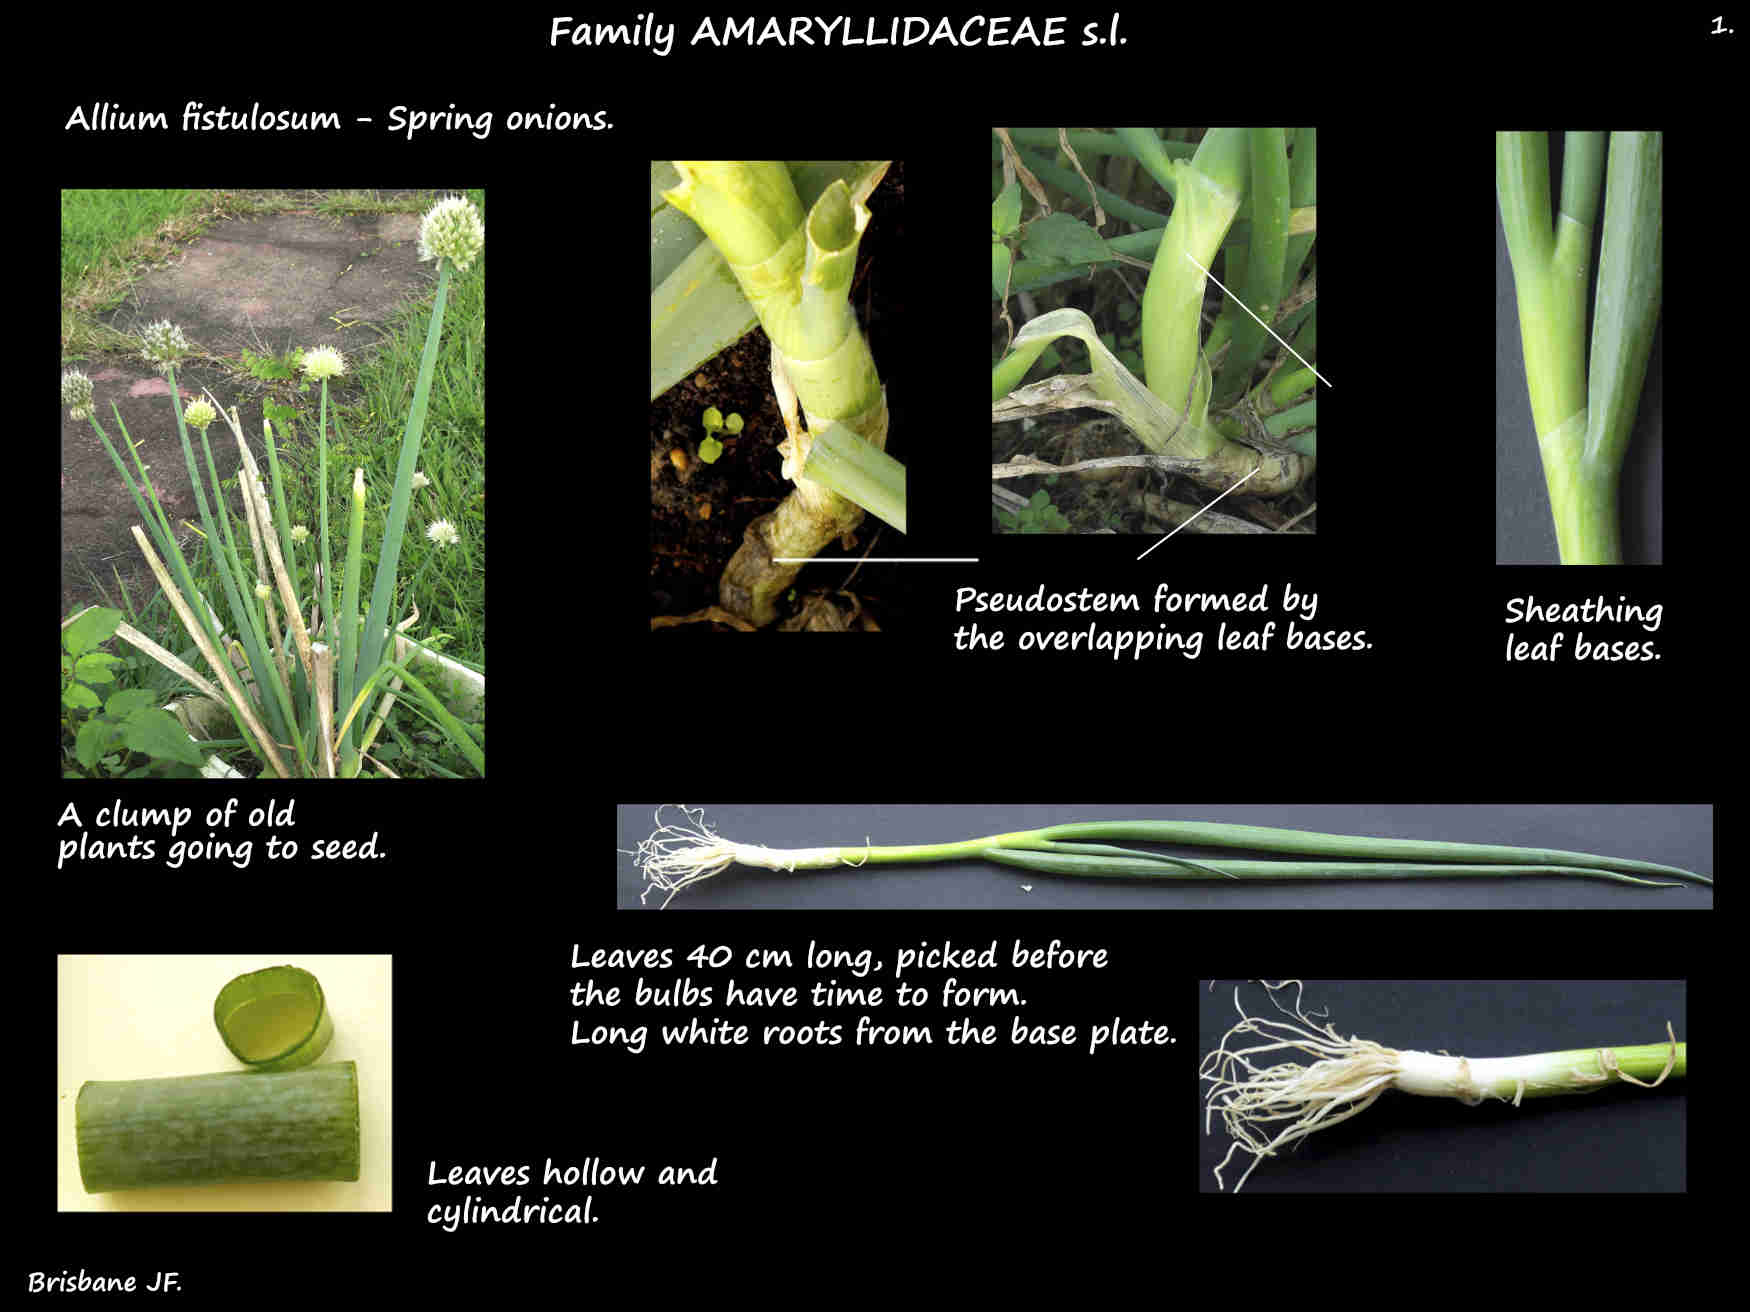 1 Allium fistulosum plants & leaves